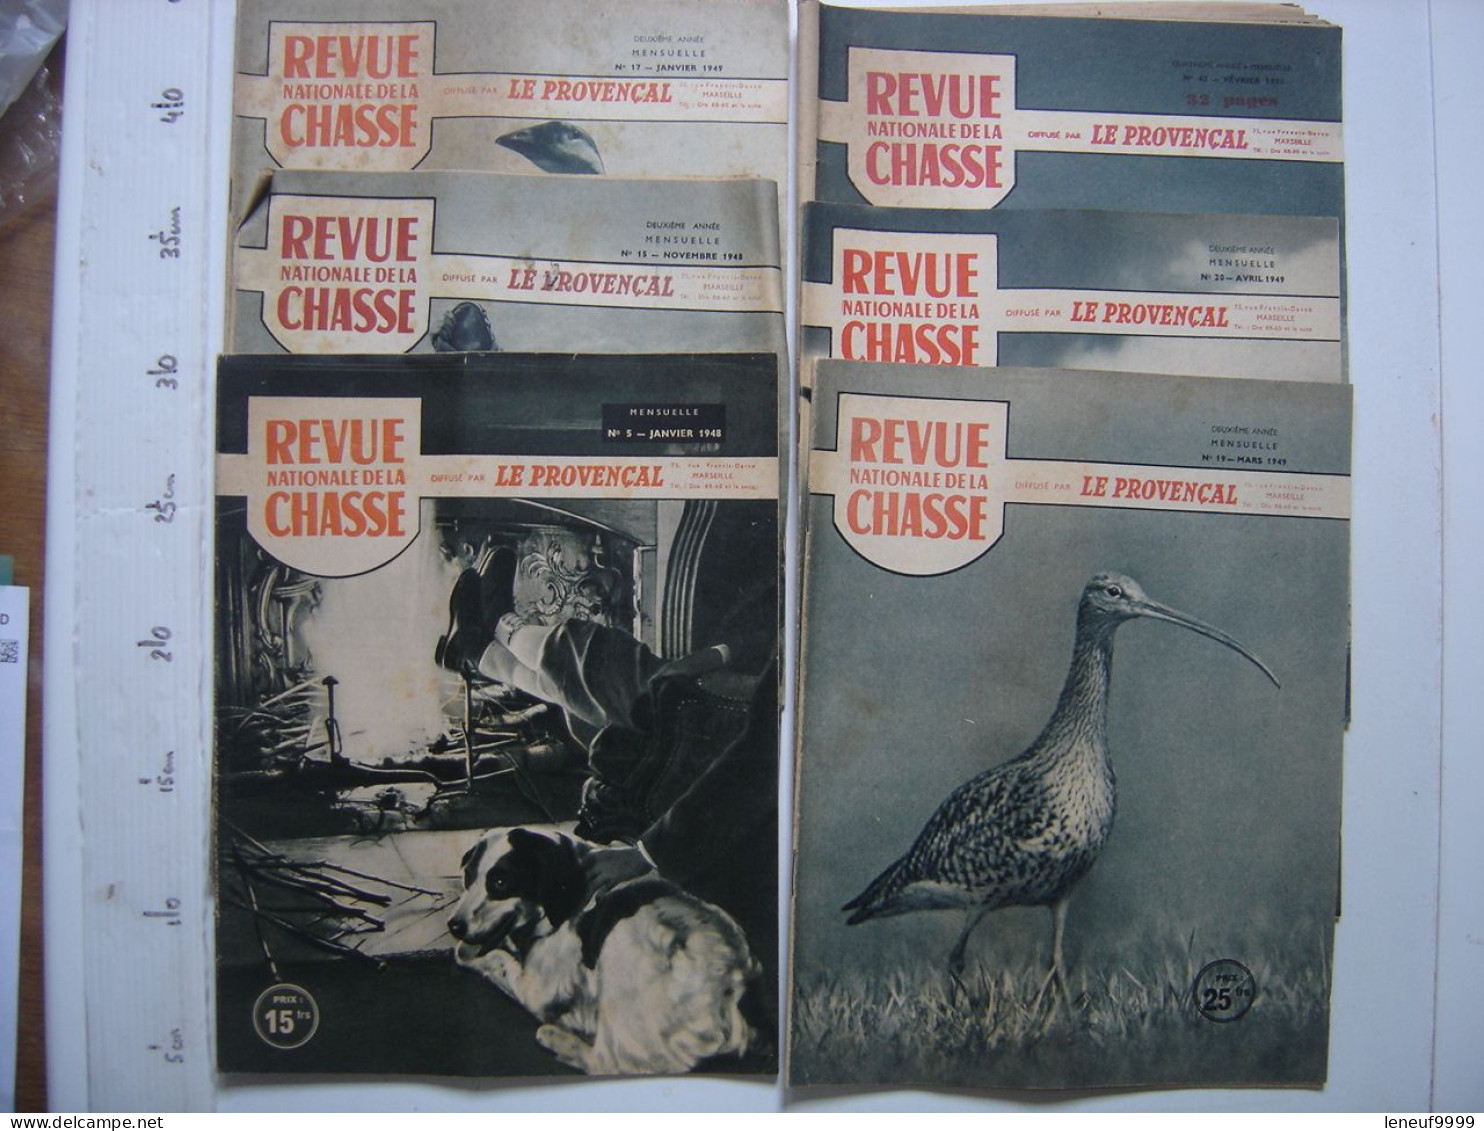 6 Magazines REVUE NATIONALE DE LA CHASSE Le Provencal 1/11-1948 1/3/4-1949 2/1951 - Chasse/Pêche